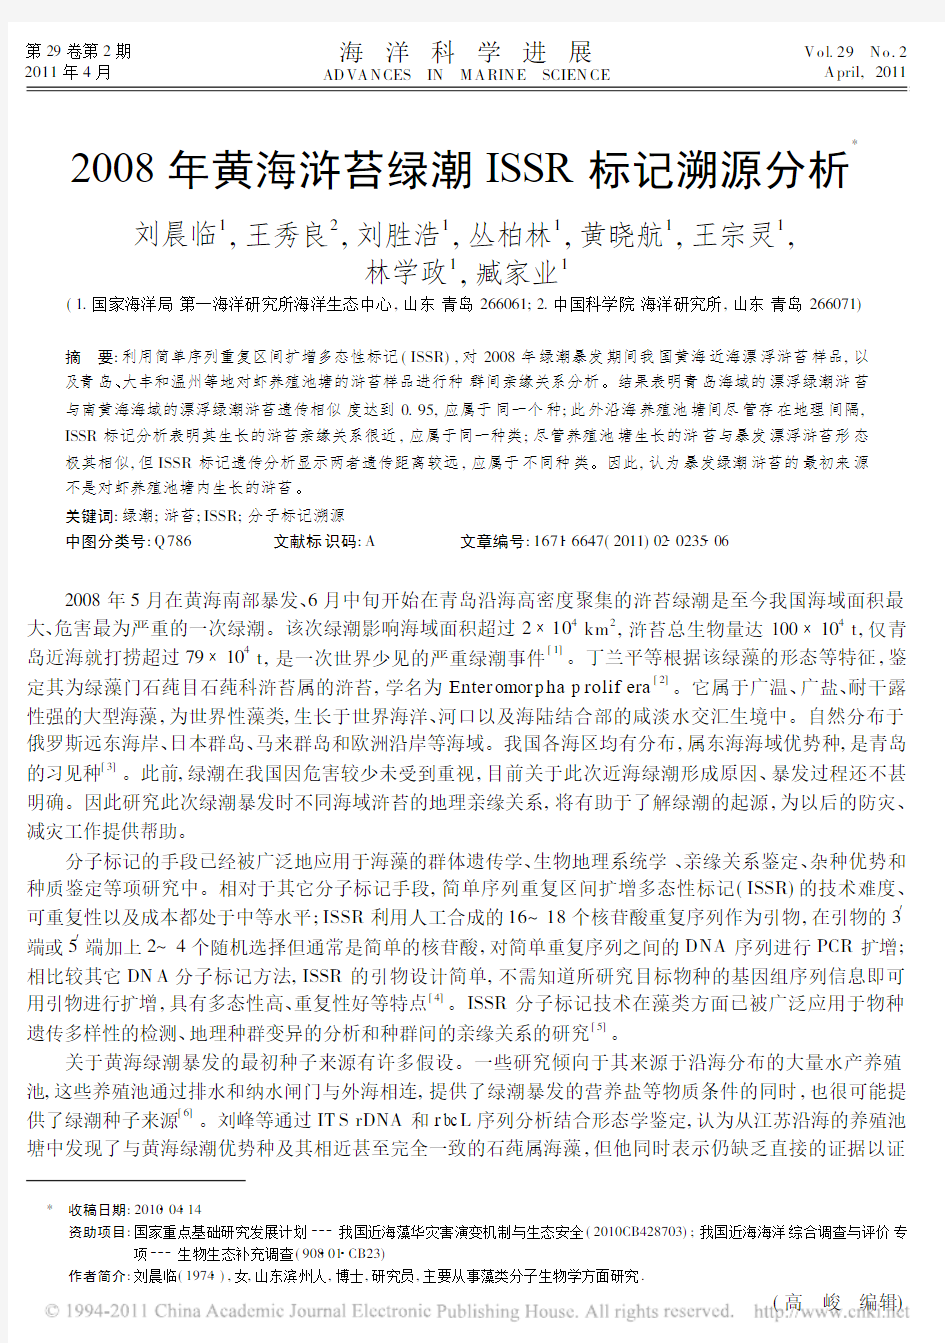 2008年黄海浒苔绿潮ISSR标记溯源分析